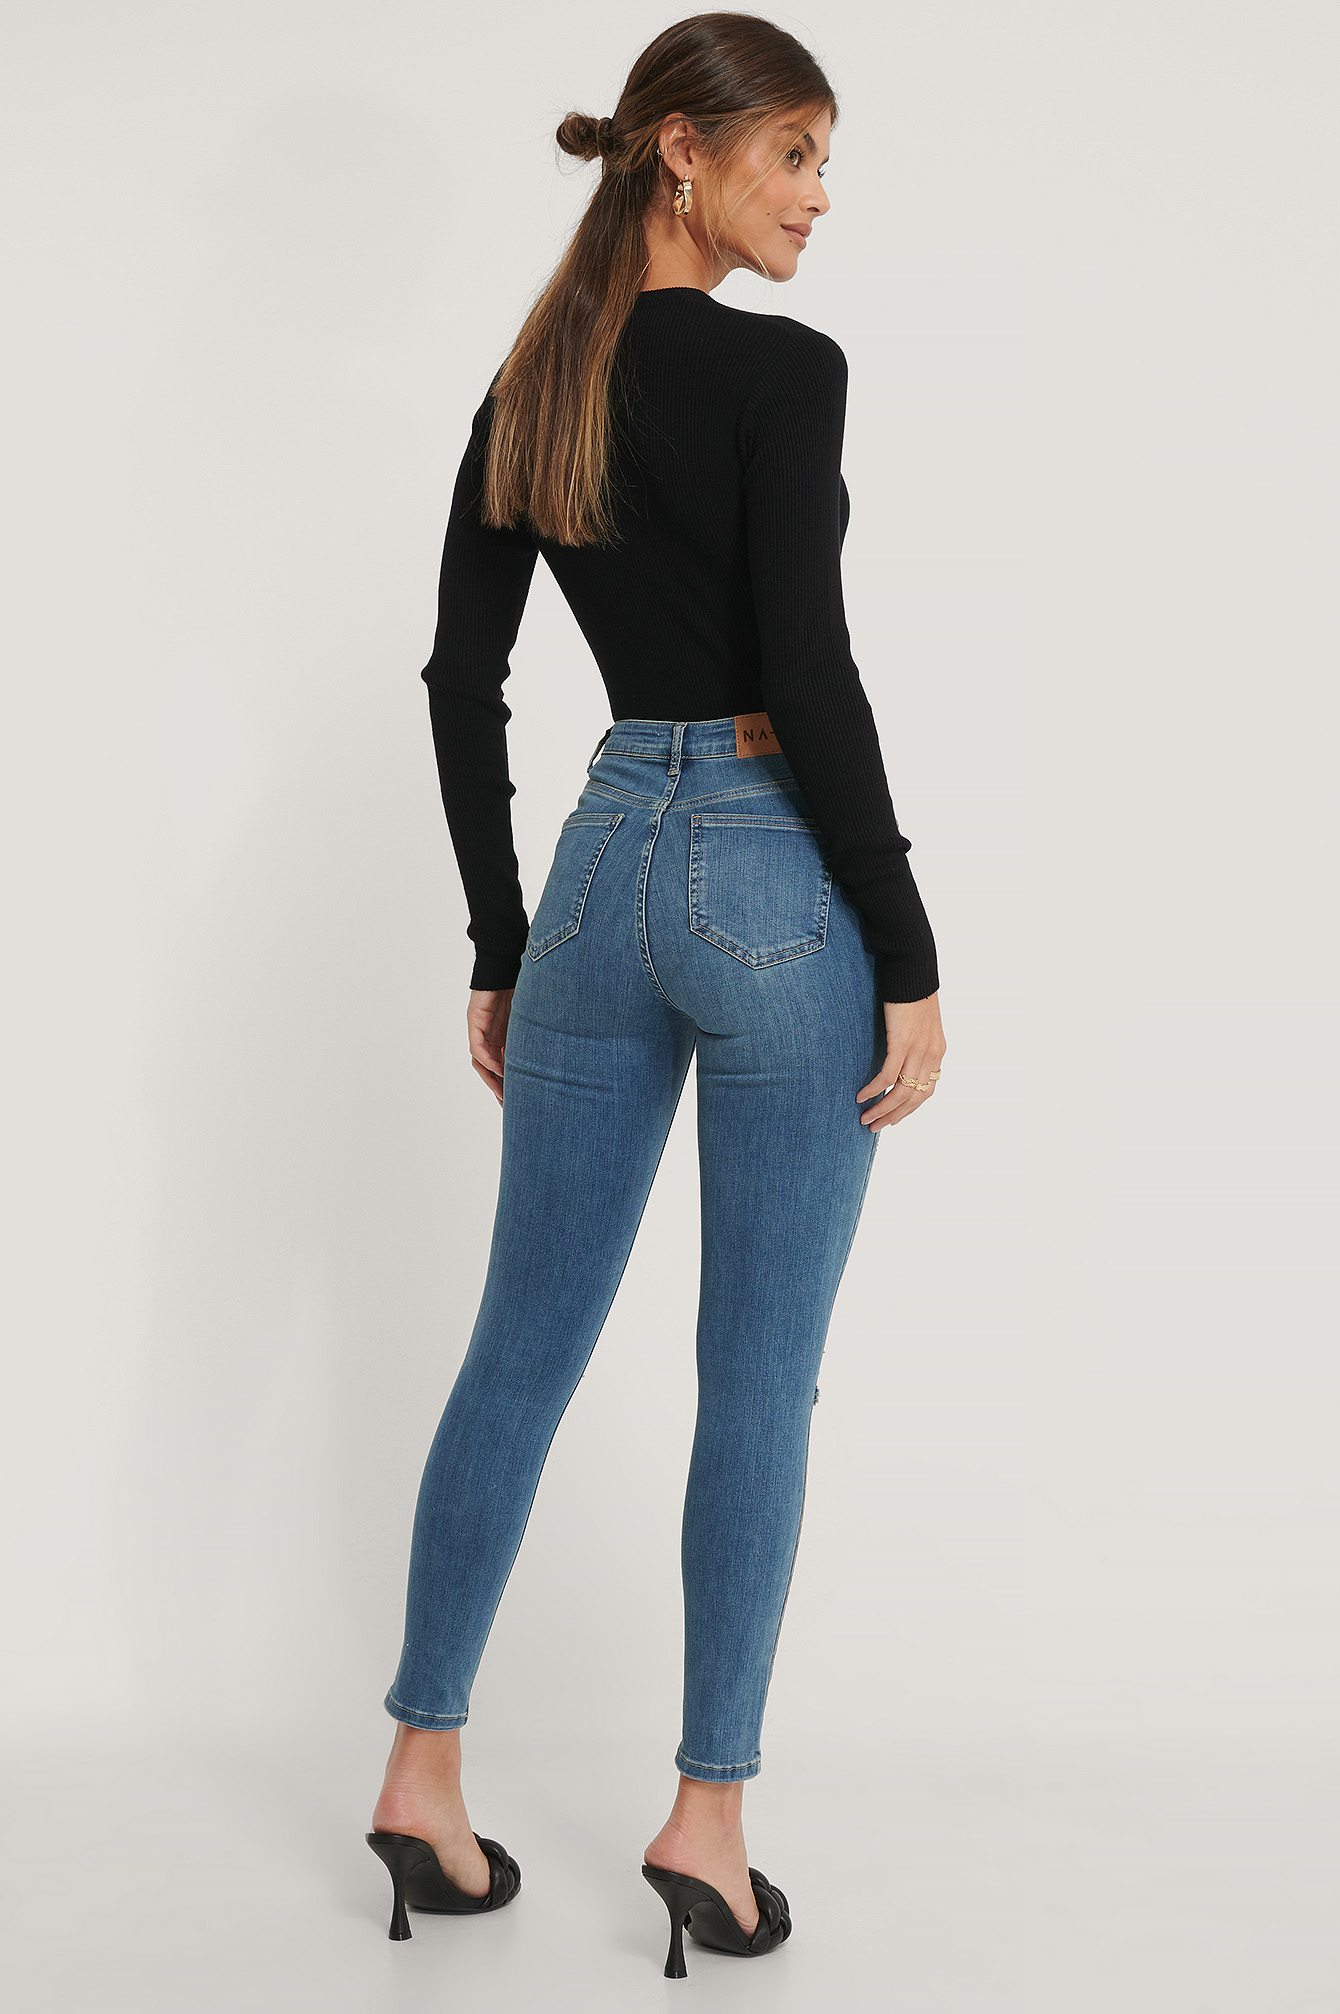 Damen Bekleidung Jeans Röhrenjeans NA-KD Denim Reborn Organische Skinny Jeans mit hoher Taille Used-Look in Schwarz 